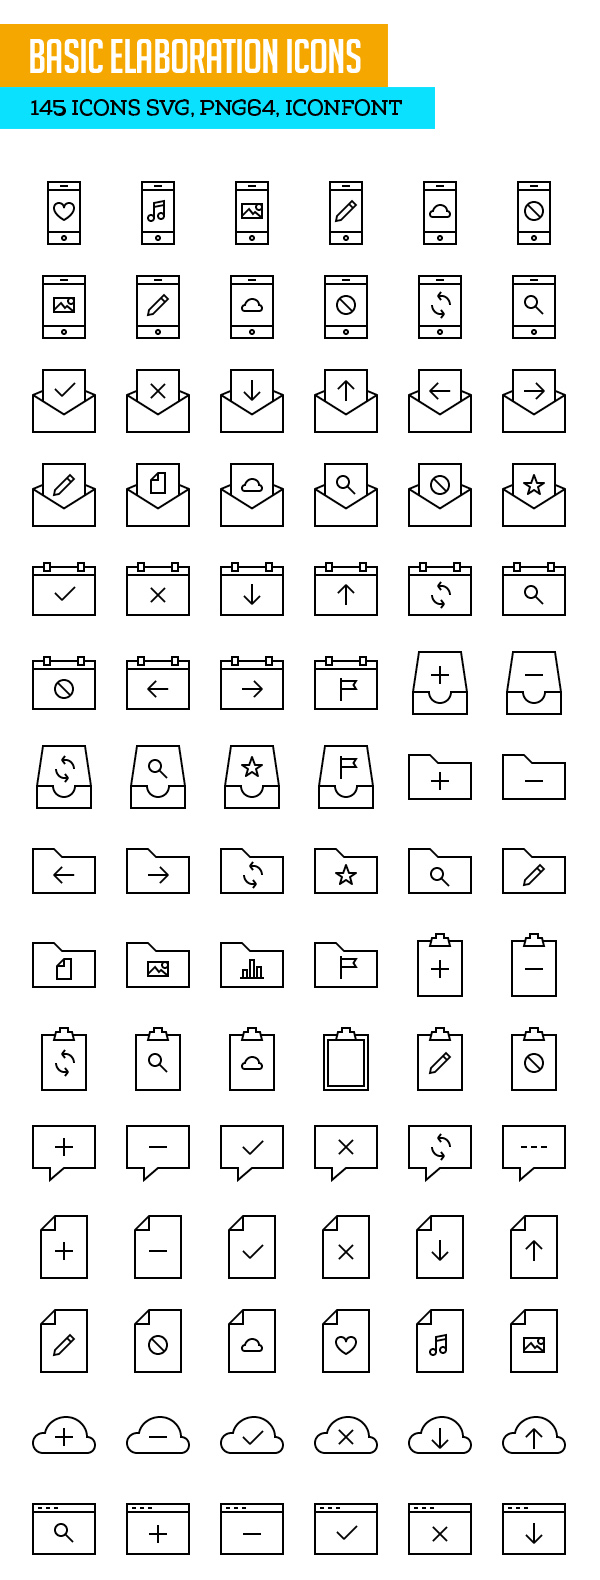 Basic Elaboration Icons SVG PNG Icon Font